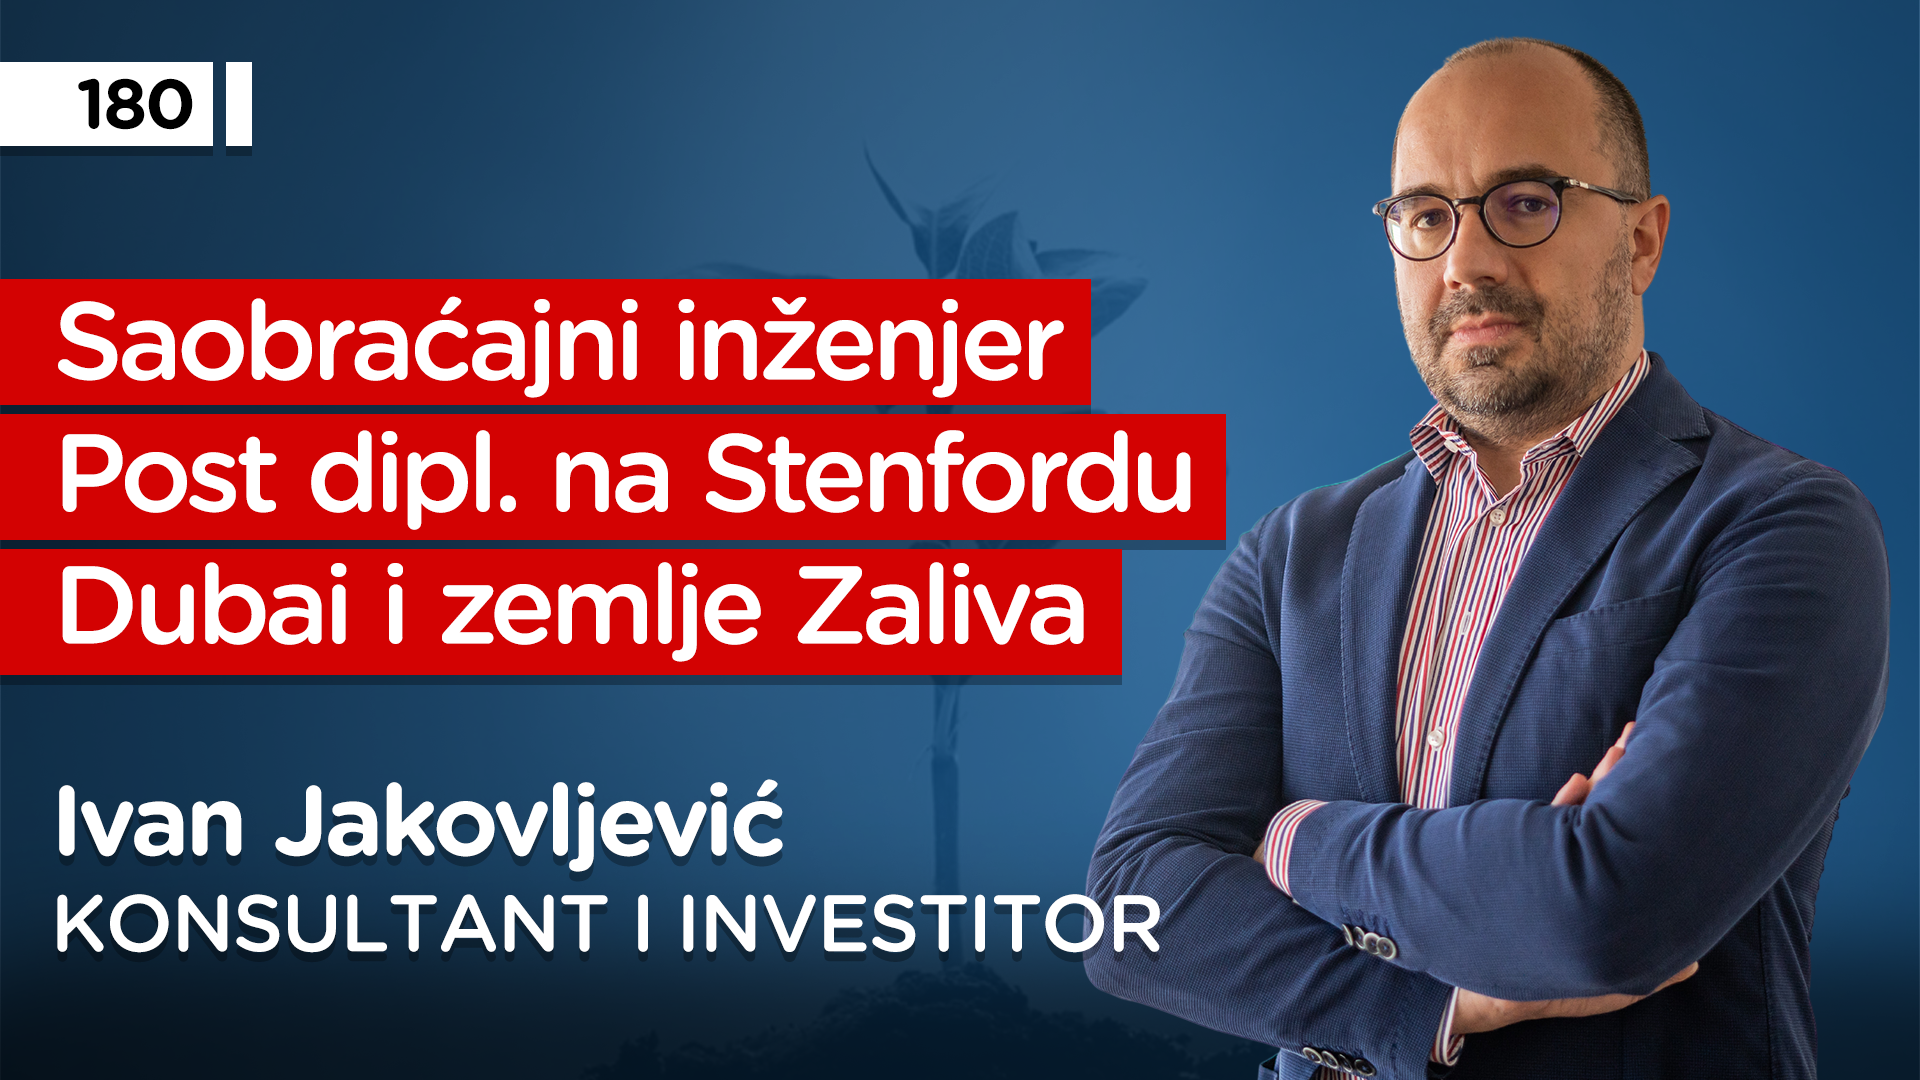 EP180: Ivan Jakovljević